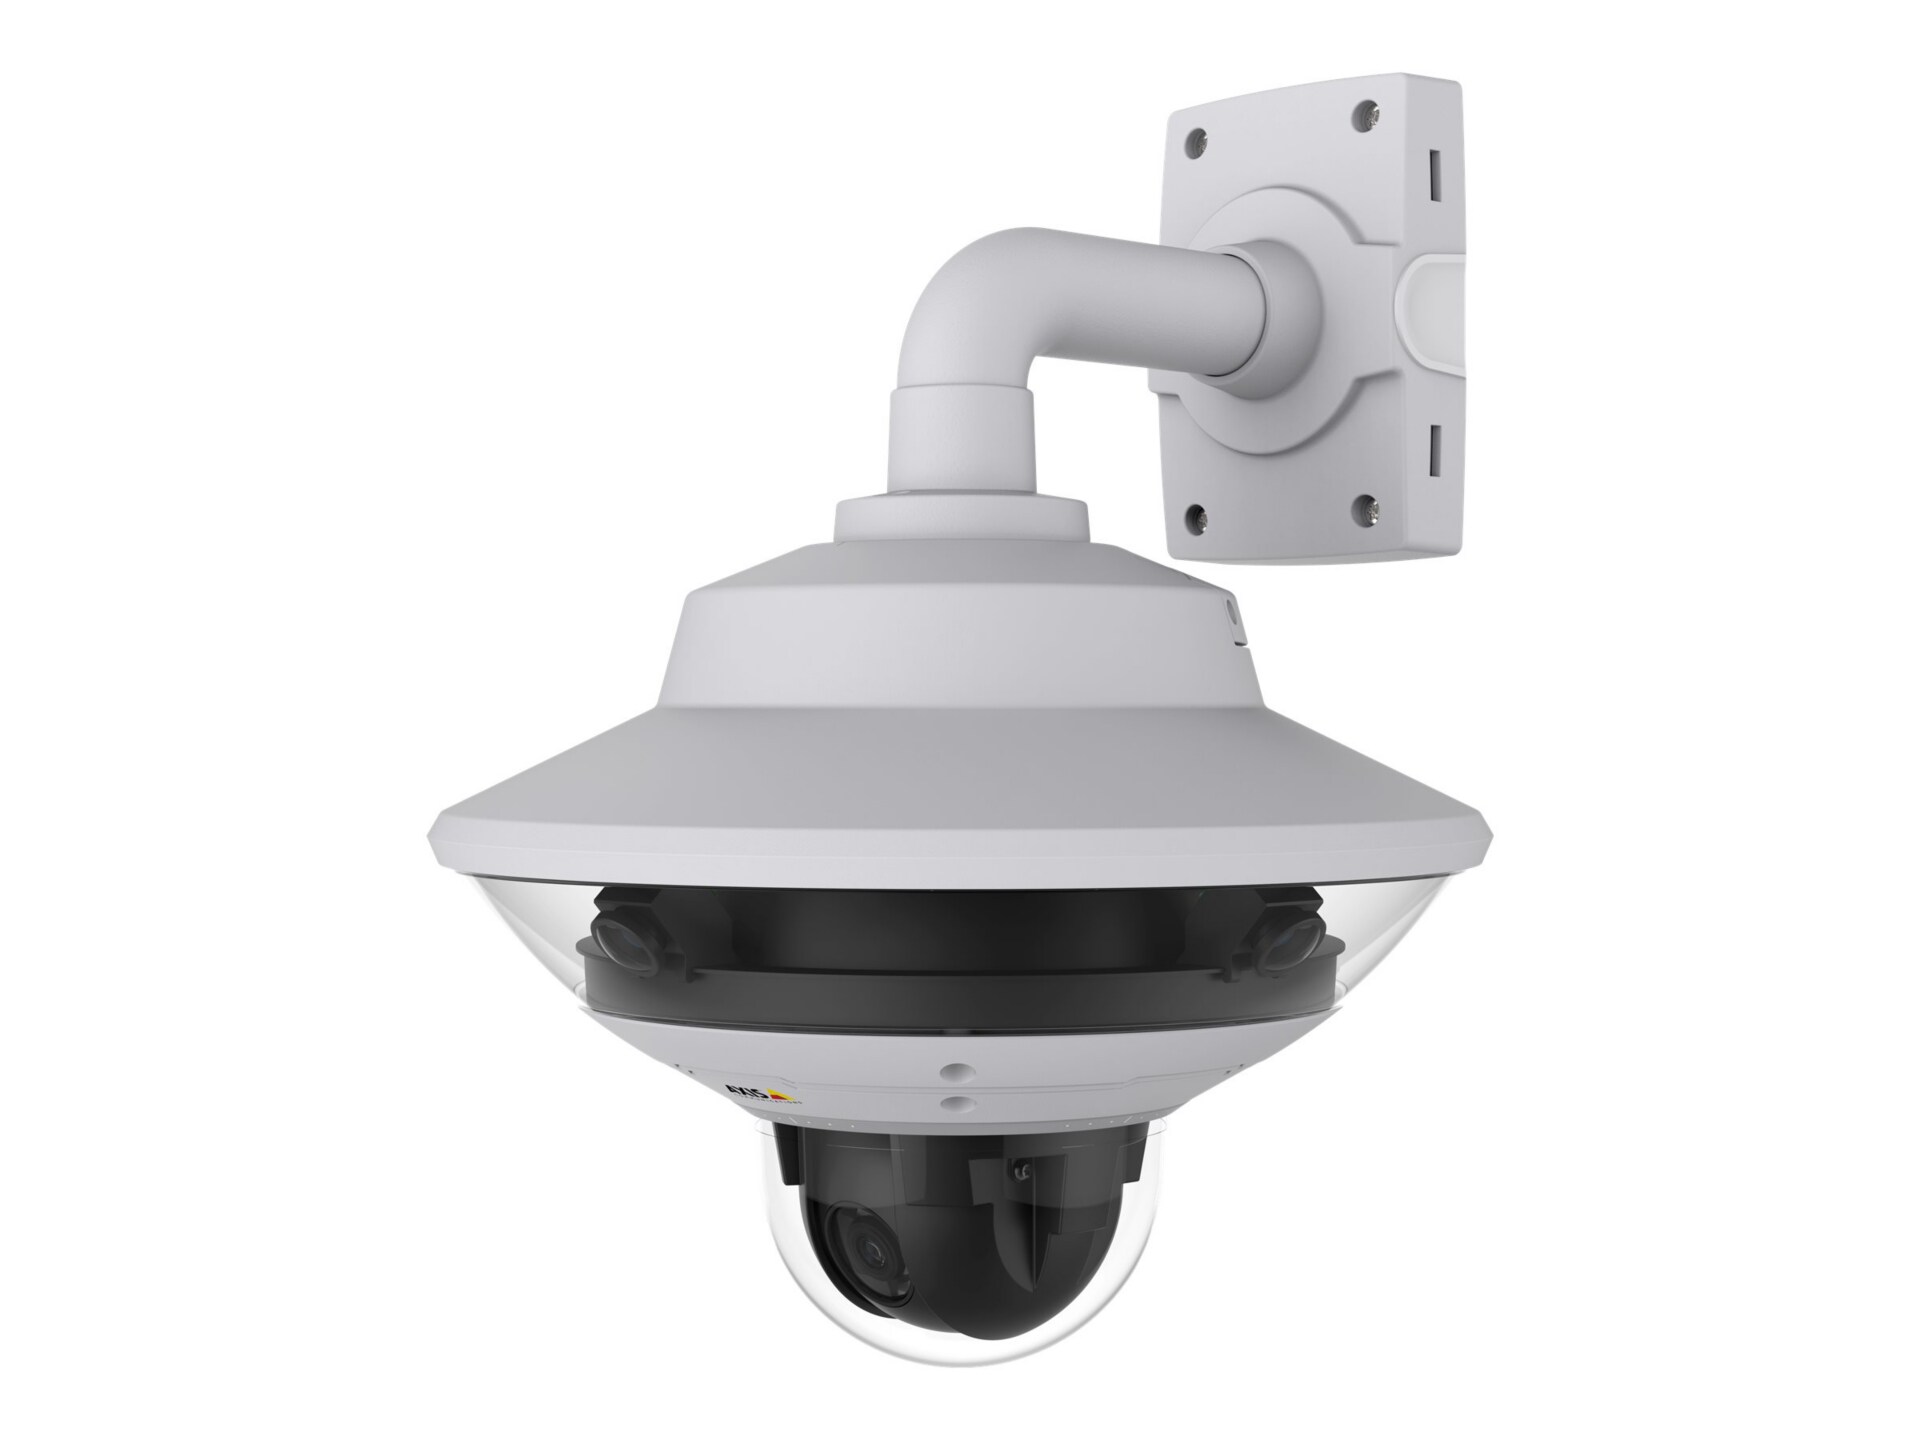 AXIS Q6000-E PTZ Dome Network Camera 60Hz - network surveillance camer